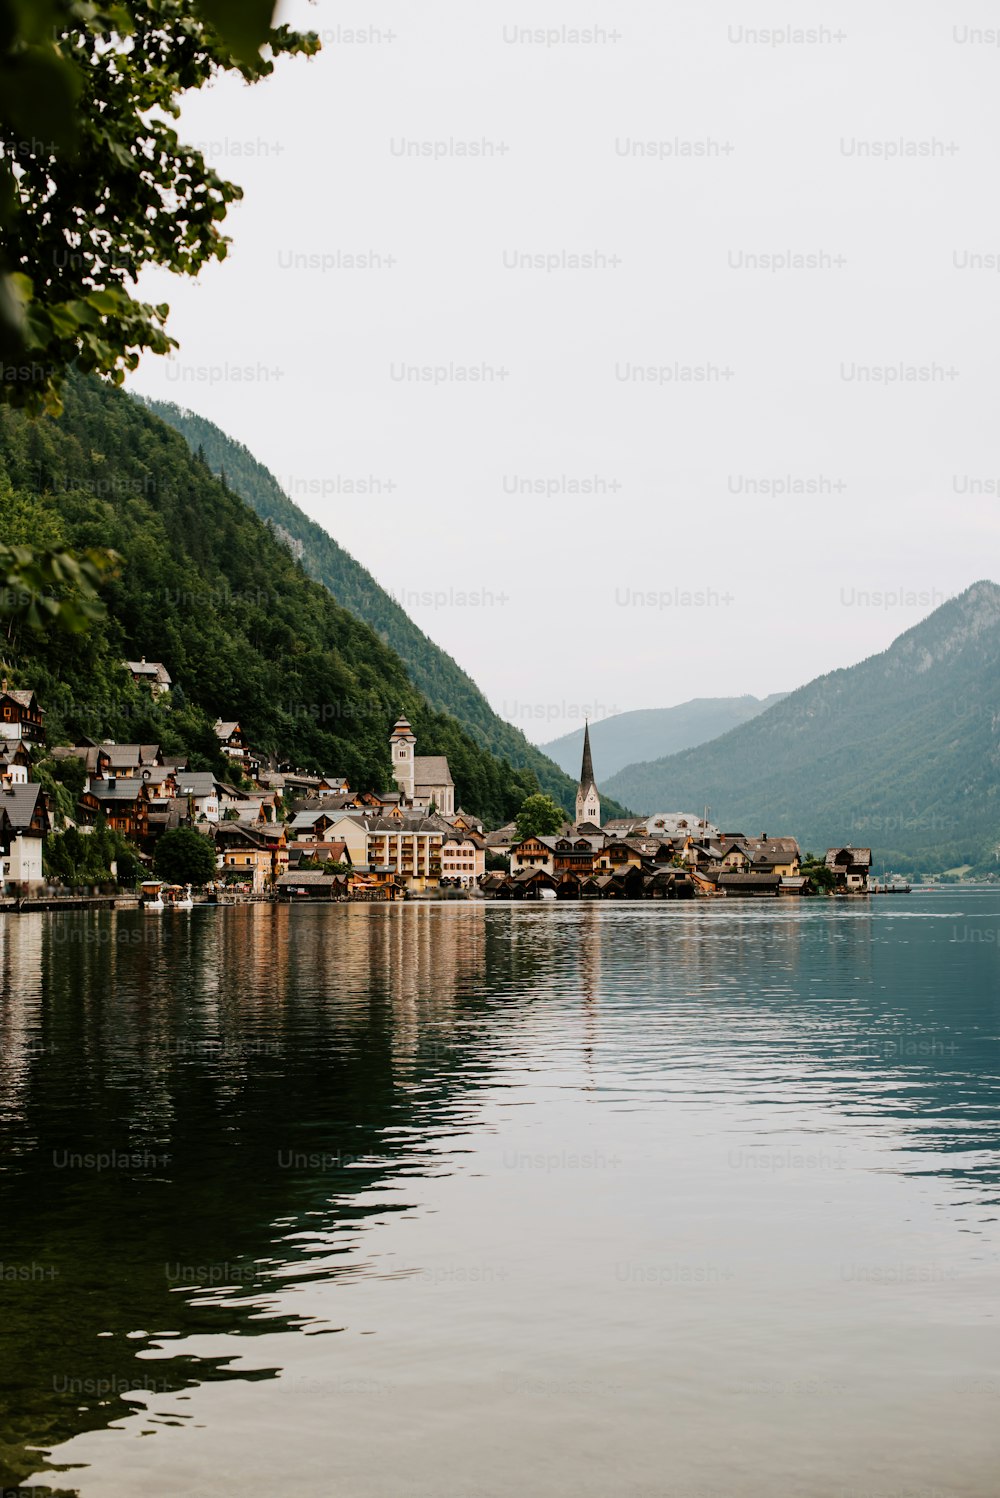 Un pequeño pueblo en un lago rodeado de montañas